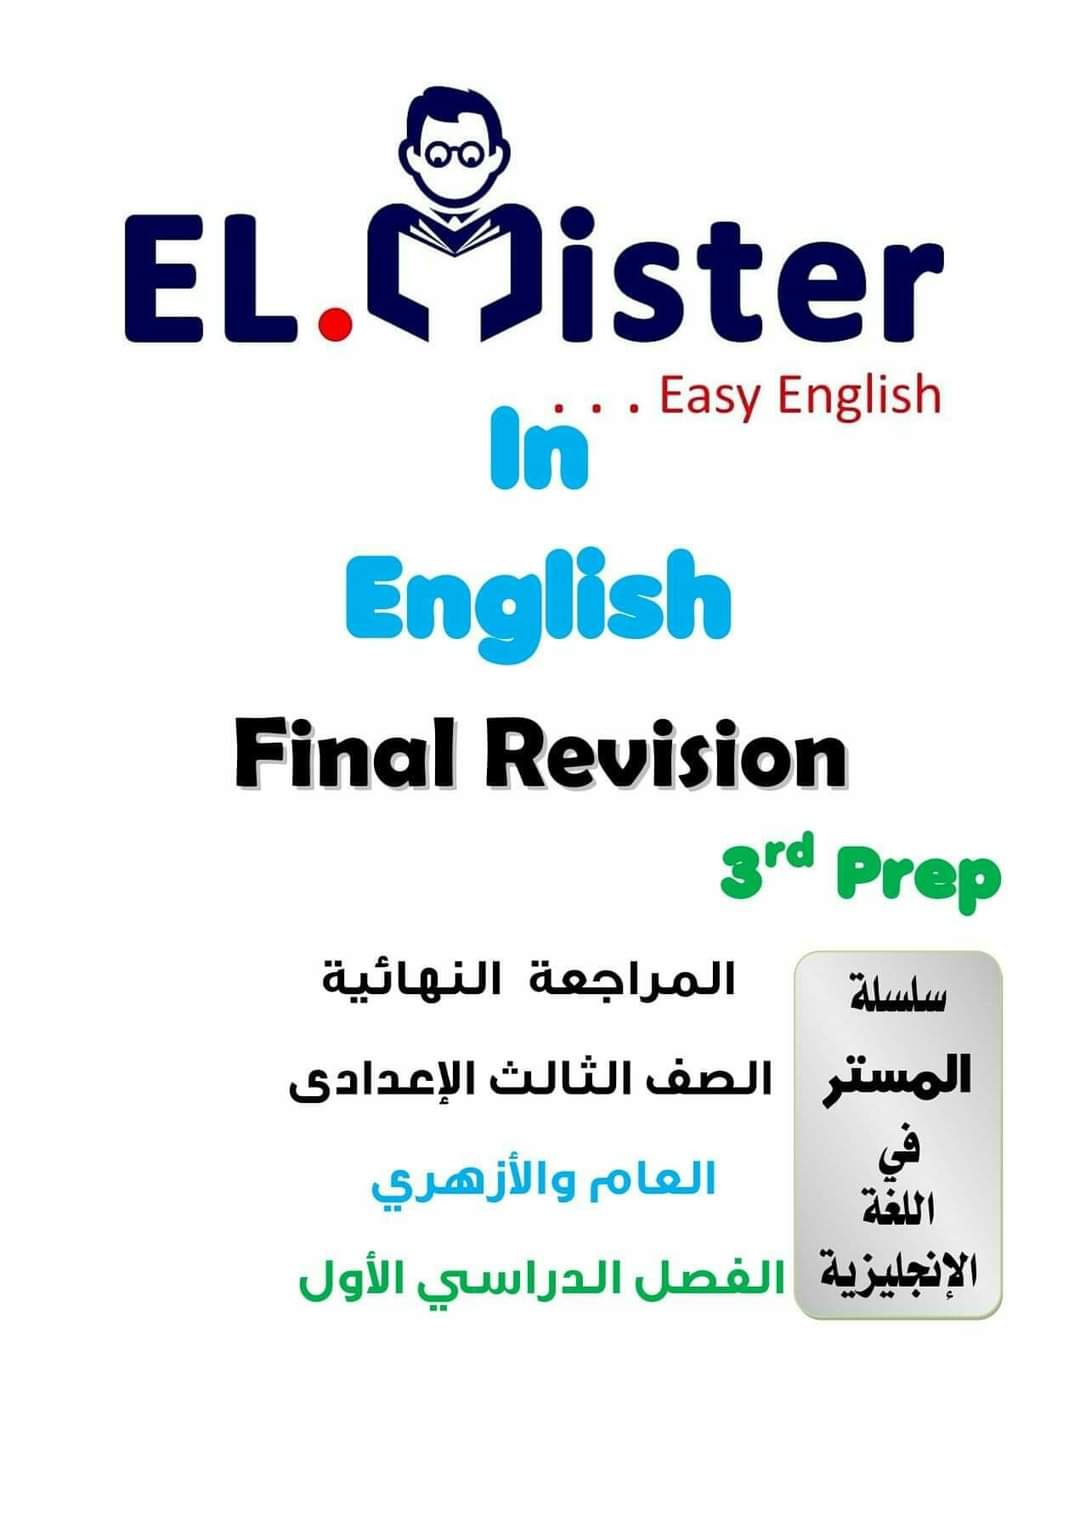 مراجعة ليلة الامتحان انجليزي الصف الثالث الاعدادي - مراجعة الانجليزي تالتة اعدادي